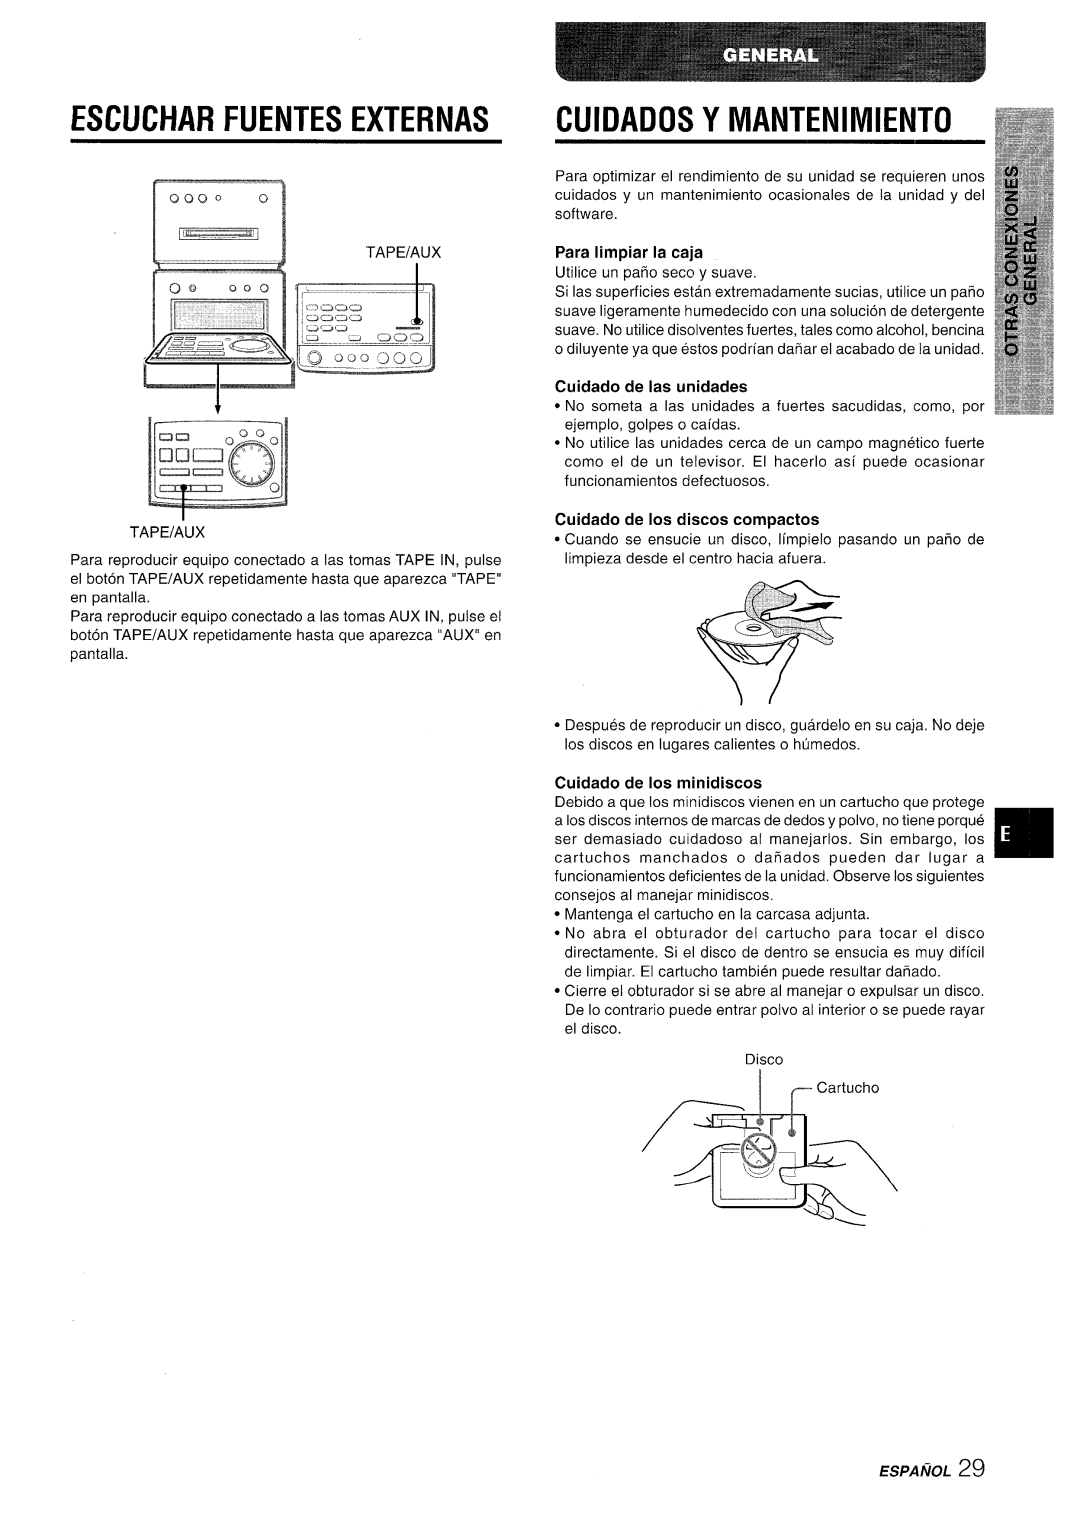 Aiwa XR-MD95 Escucharfuentes Externas Cuidados Y Mantenimiento, Para Iimpiar la caja, Cuidado de as unidades, Espanol 